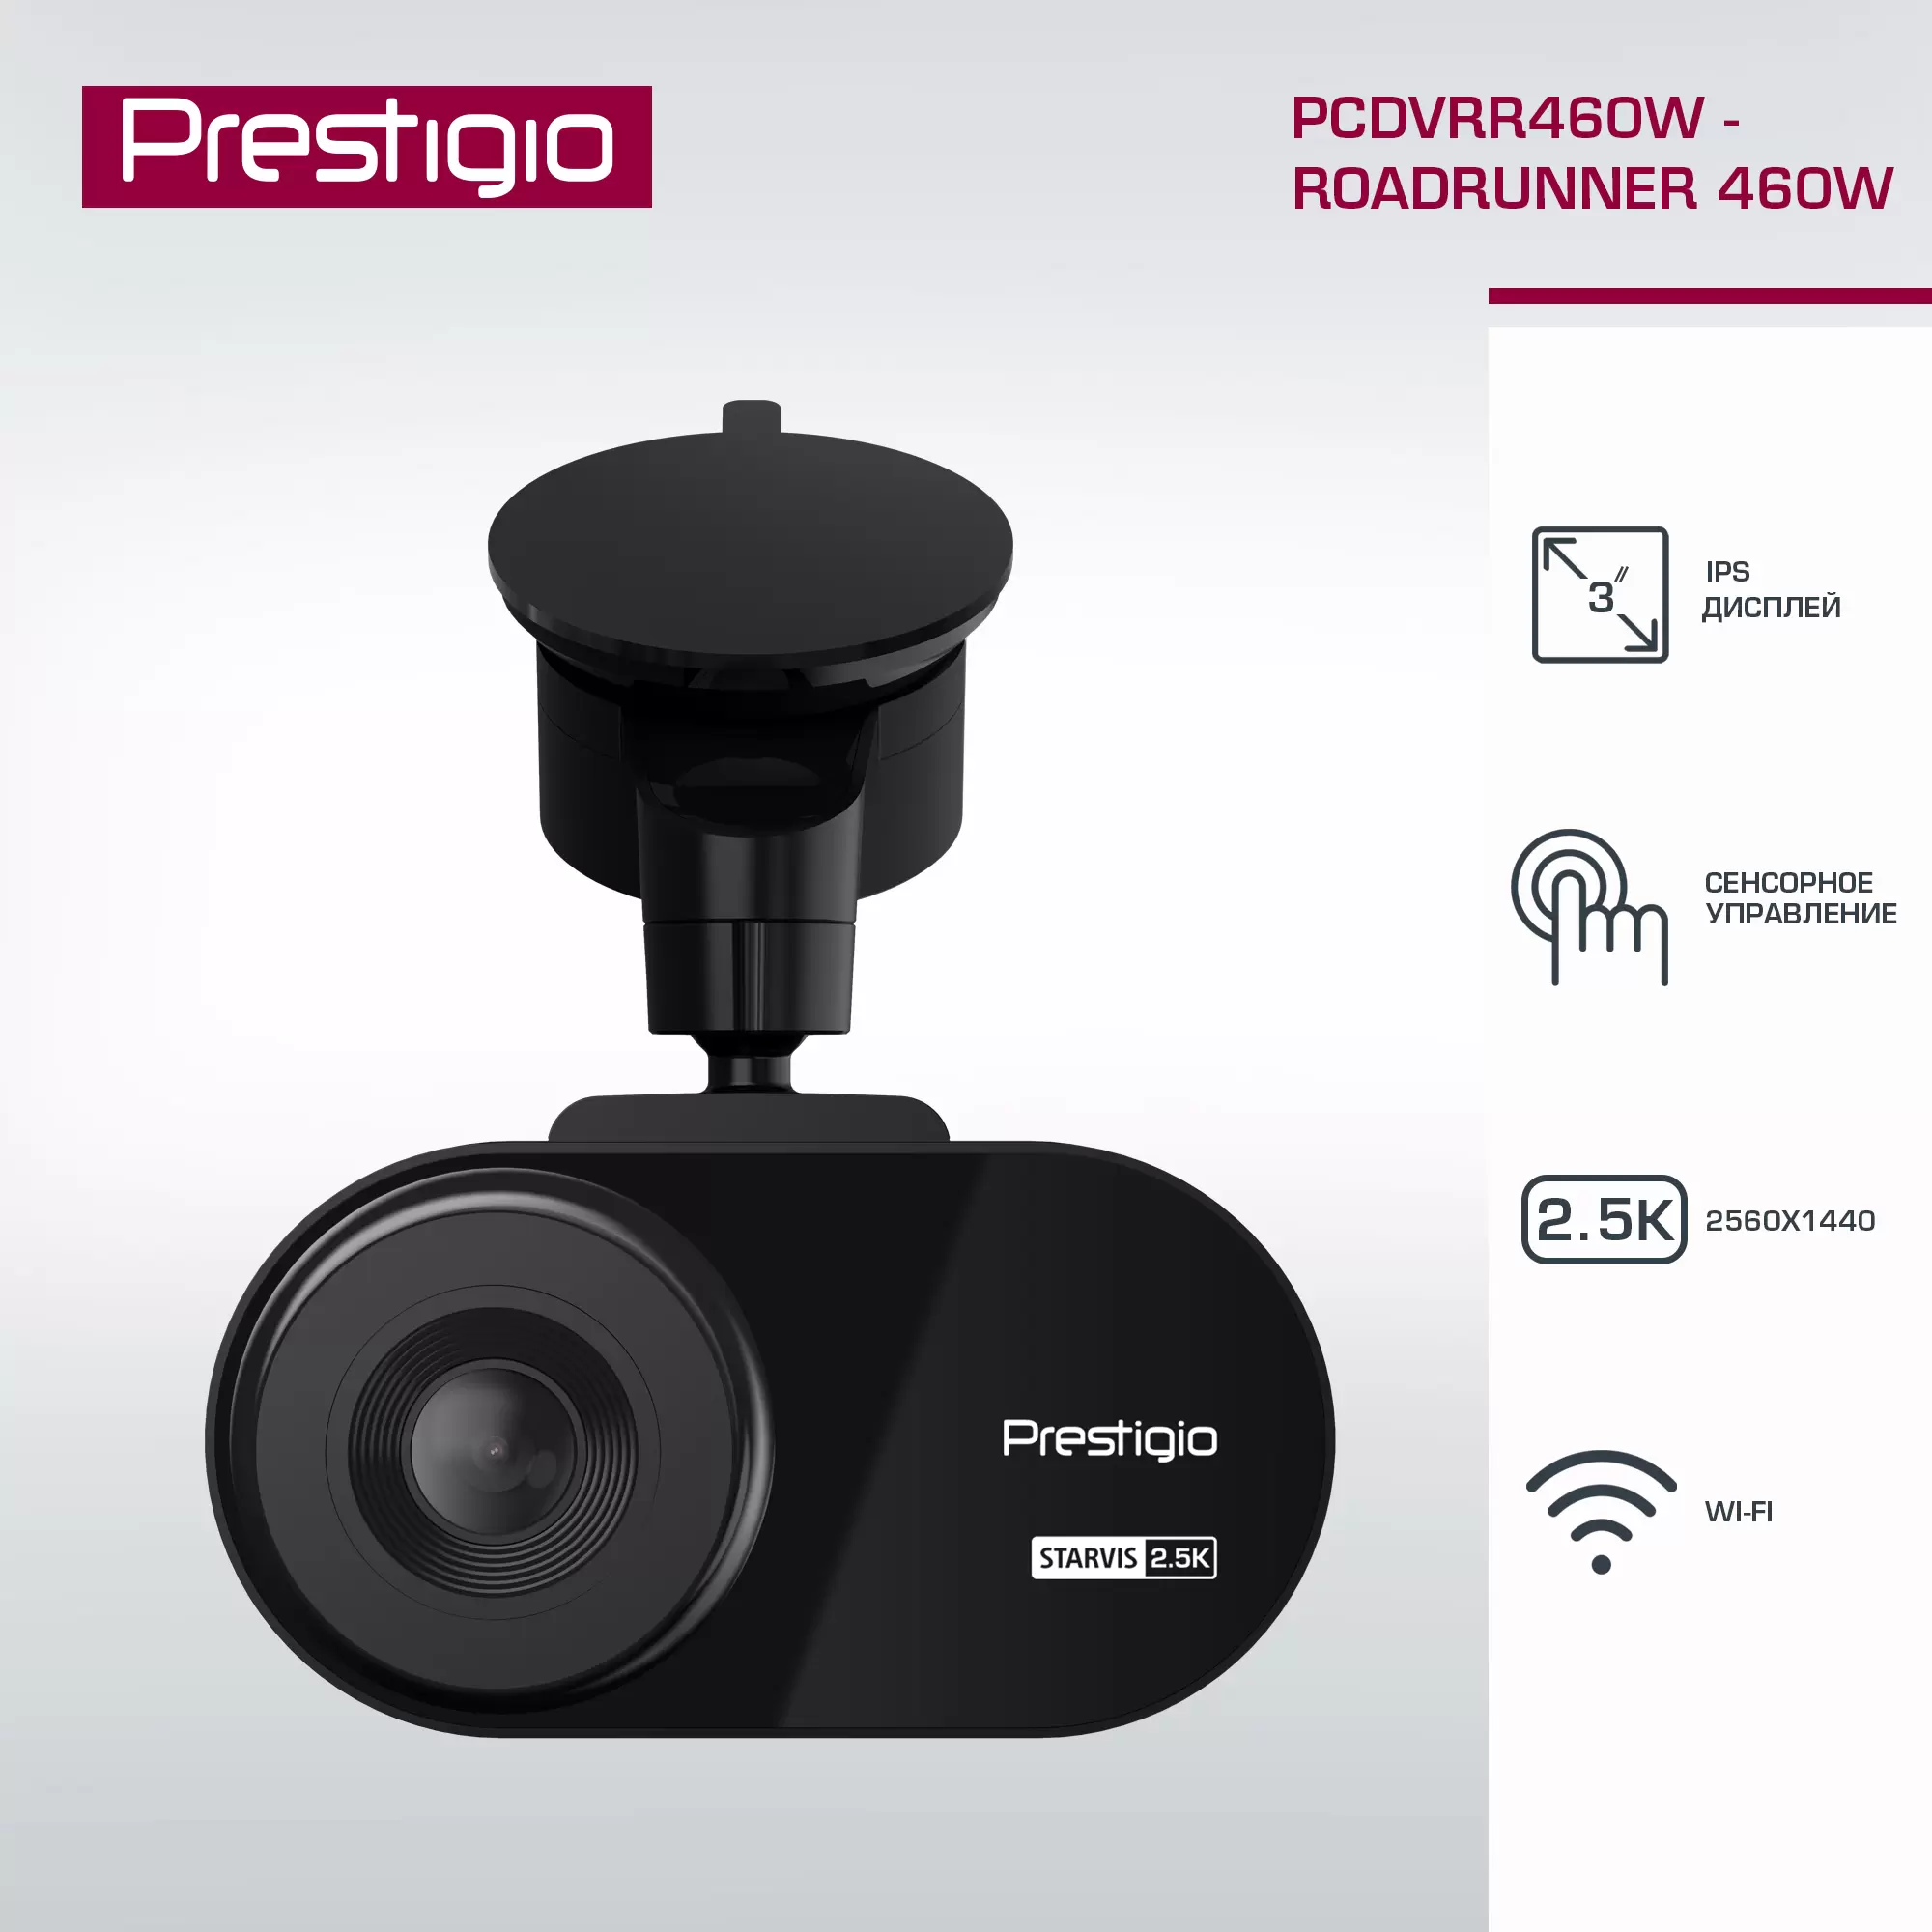 Видеорегистратор Prestigio RoadRunner 2.5K PCDVRR460W, 3-- WQHD 2560x1440, c WI-FI - VLARNIKA в Луганске